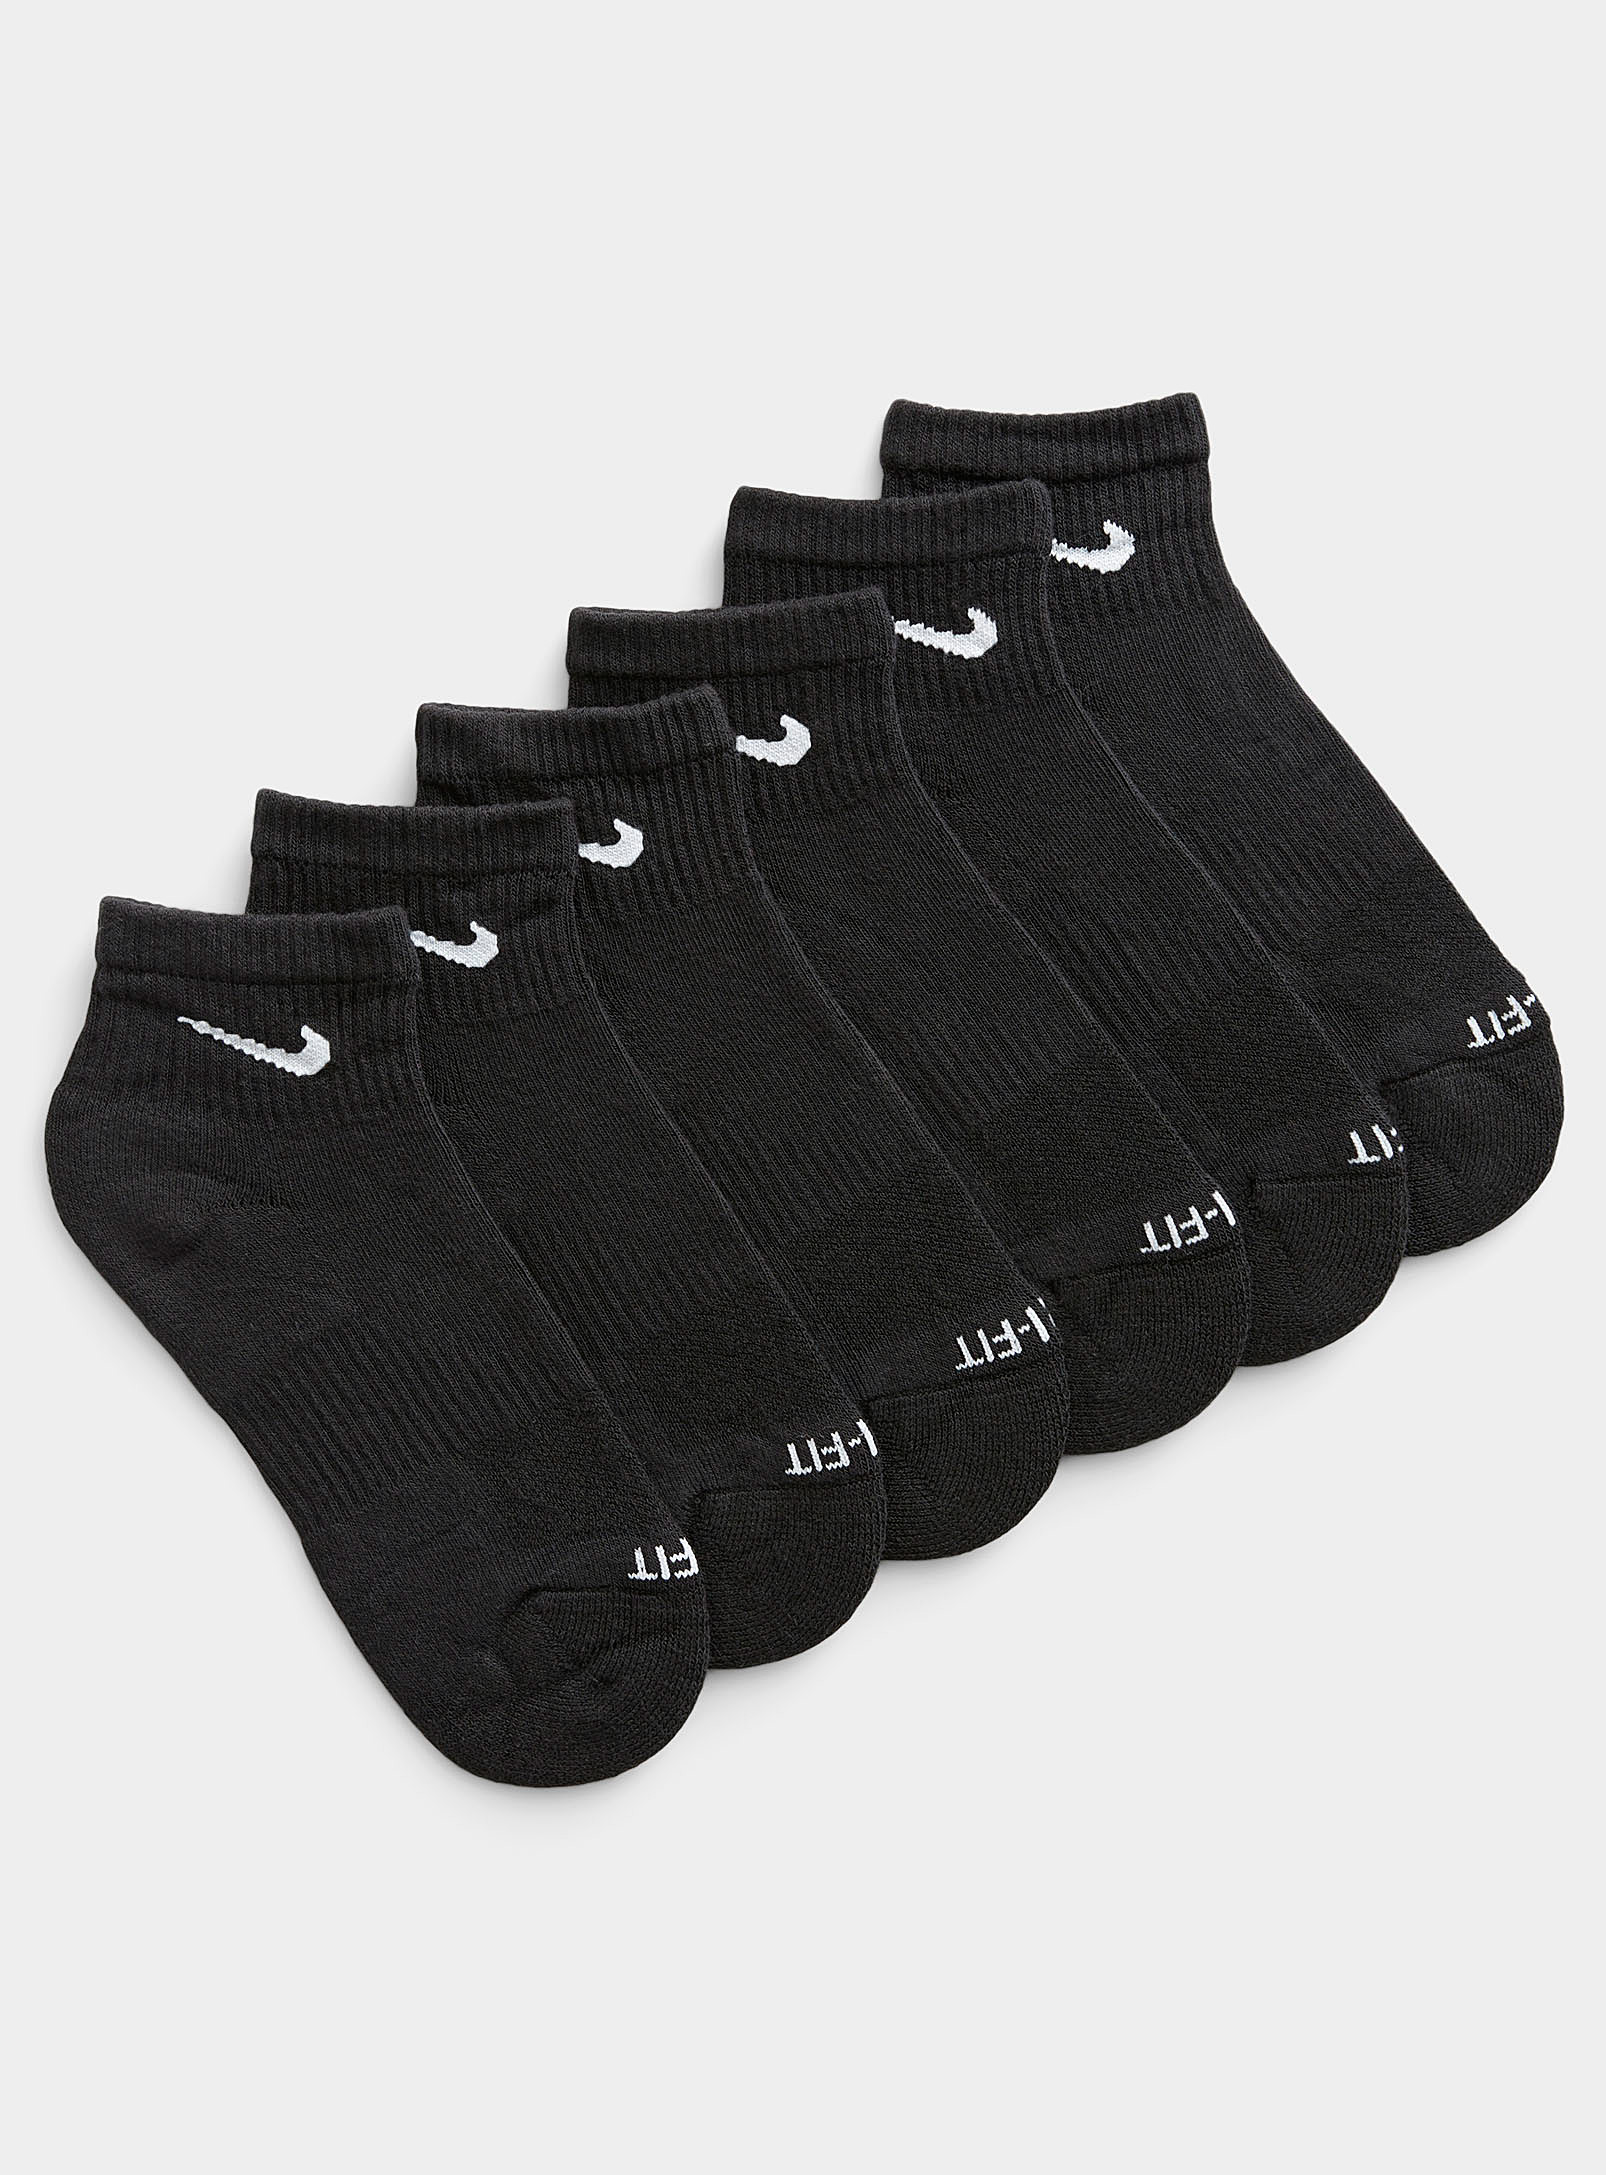 Nike Everyday Plus Ankle Socks Set Of 6 In Black